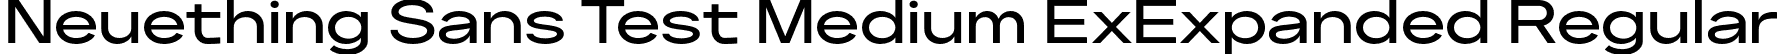 Neuething Sans Test Medium ExExpanded Regular font | NeuethingVariableTest-MediumExtraExpanded.otf